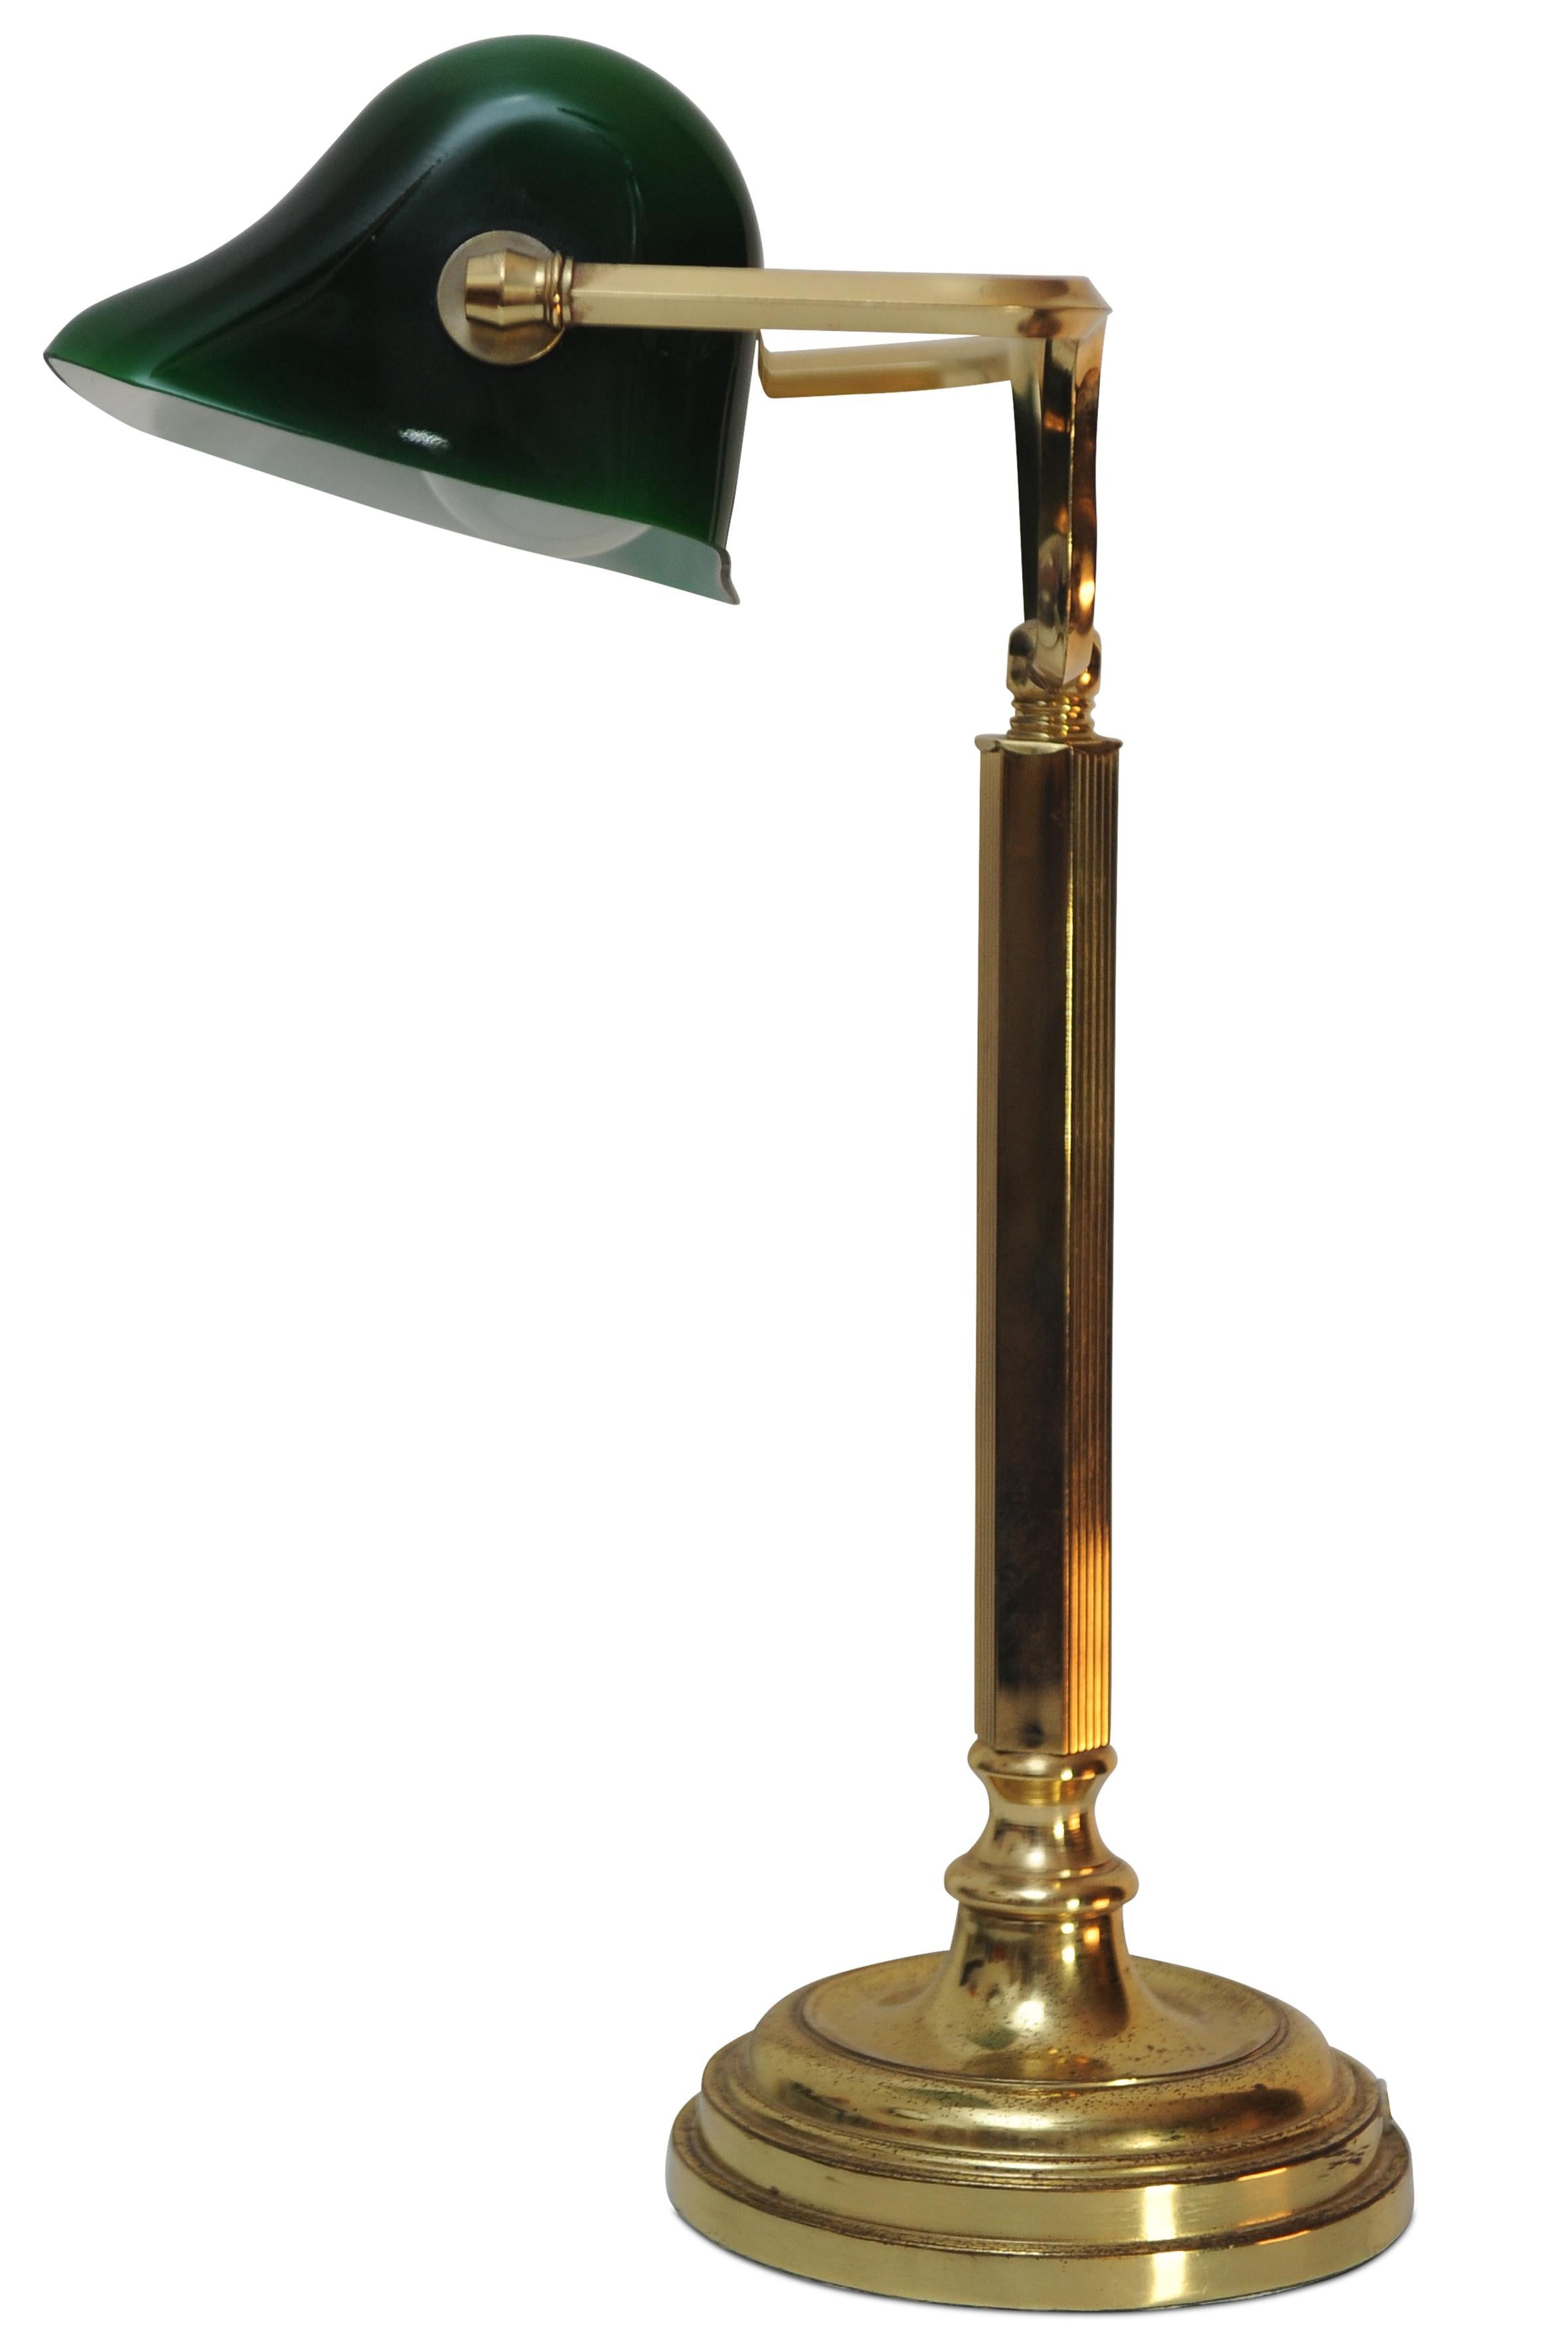 Eine ikonische Banker-Lampe aus antikem grünem Messing mit verstellbarem Messingschirm, schwerem Messingständer und Baize-Boden.
Ideal für jeden Schreibtisch oder Beistelltisch zum Lesen.